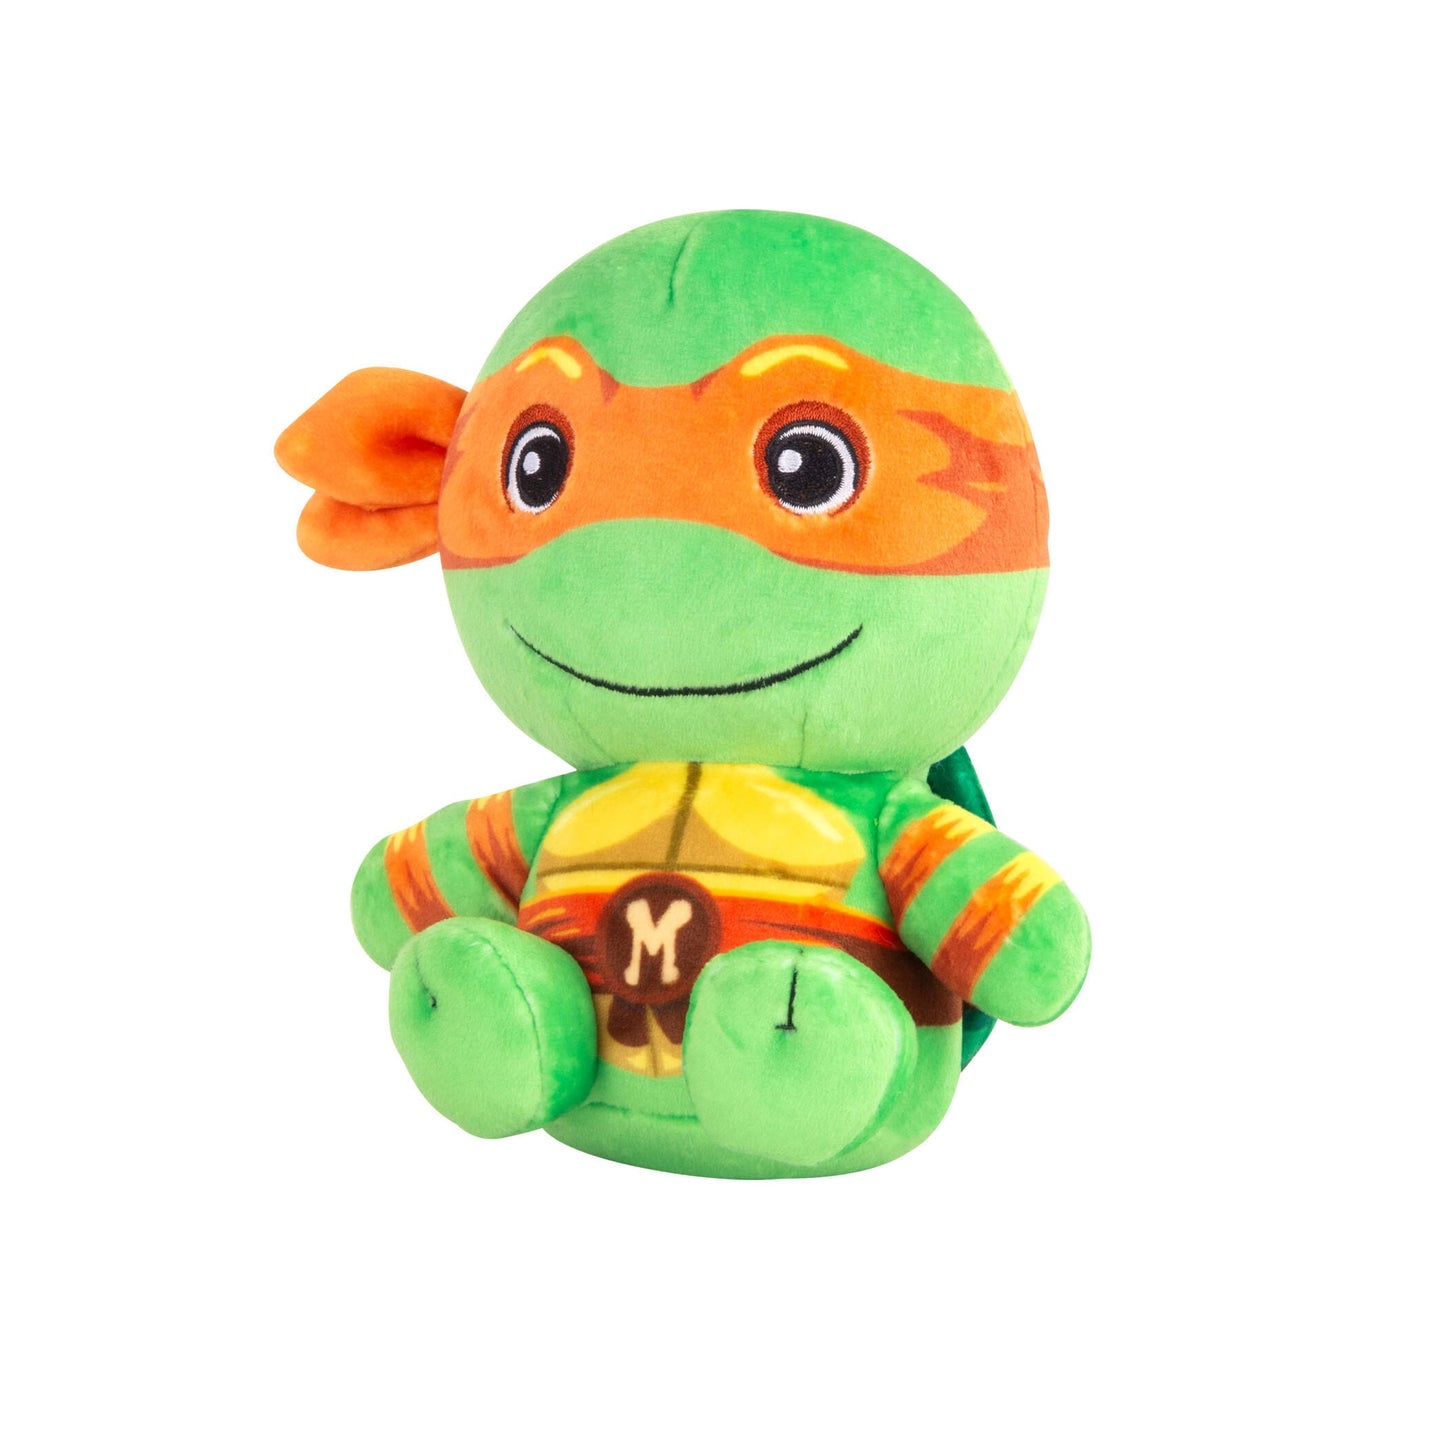 Michelangelo Junior soft toy 